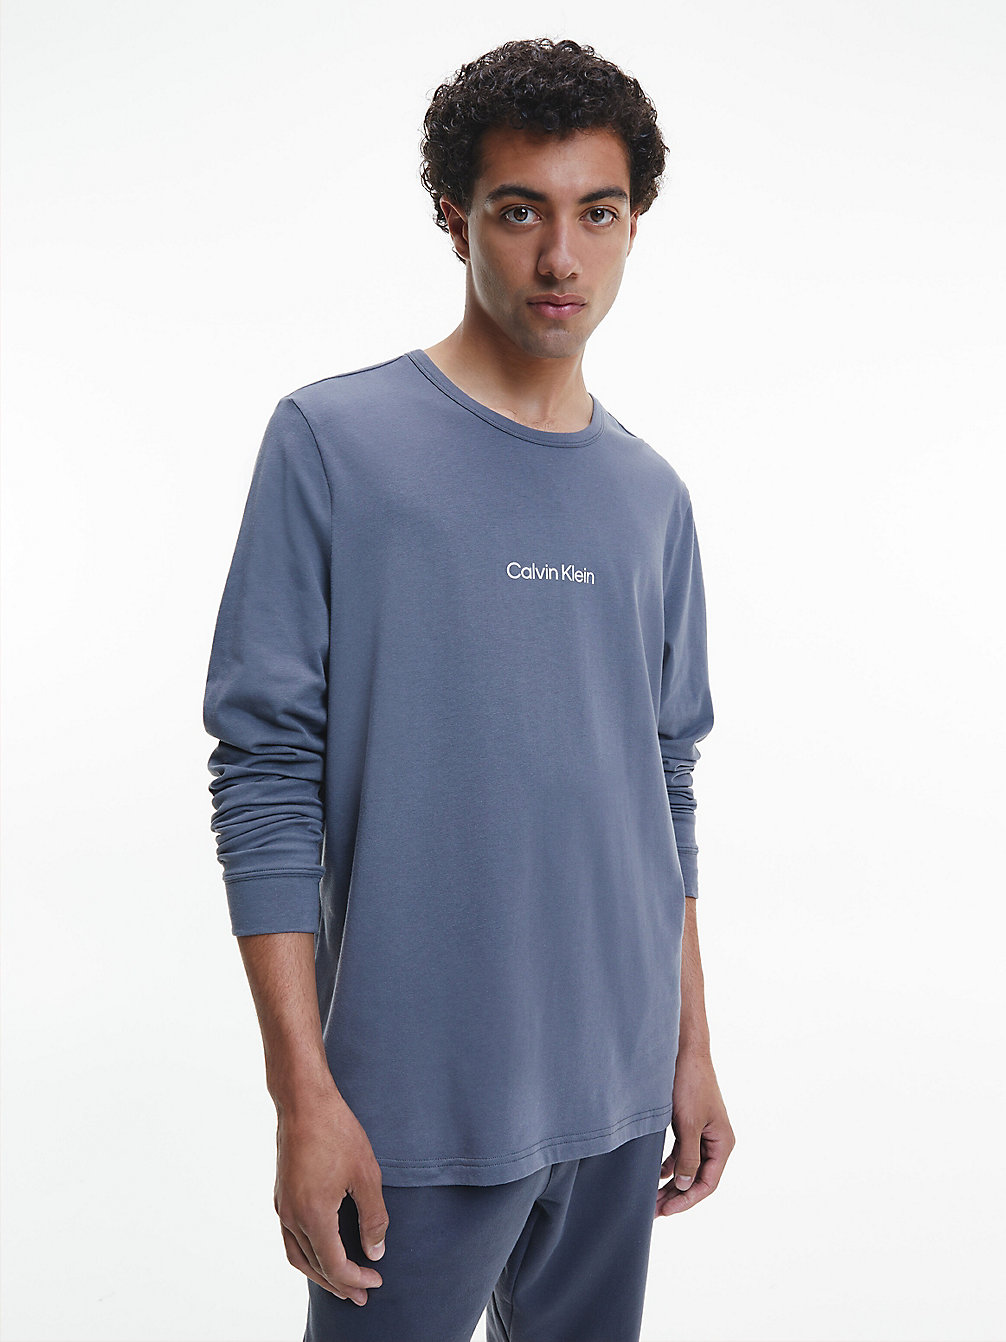 SLEEK GREY > Lounge T-Shirt Met Lange Mouwen - Modern Structure > undefined heren - Calvin Klein